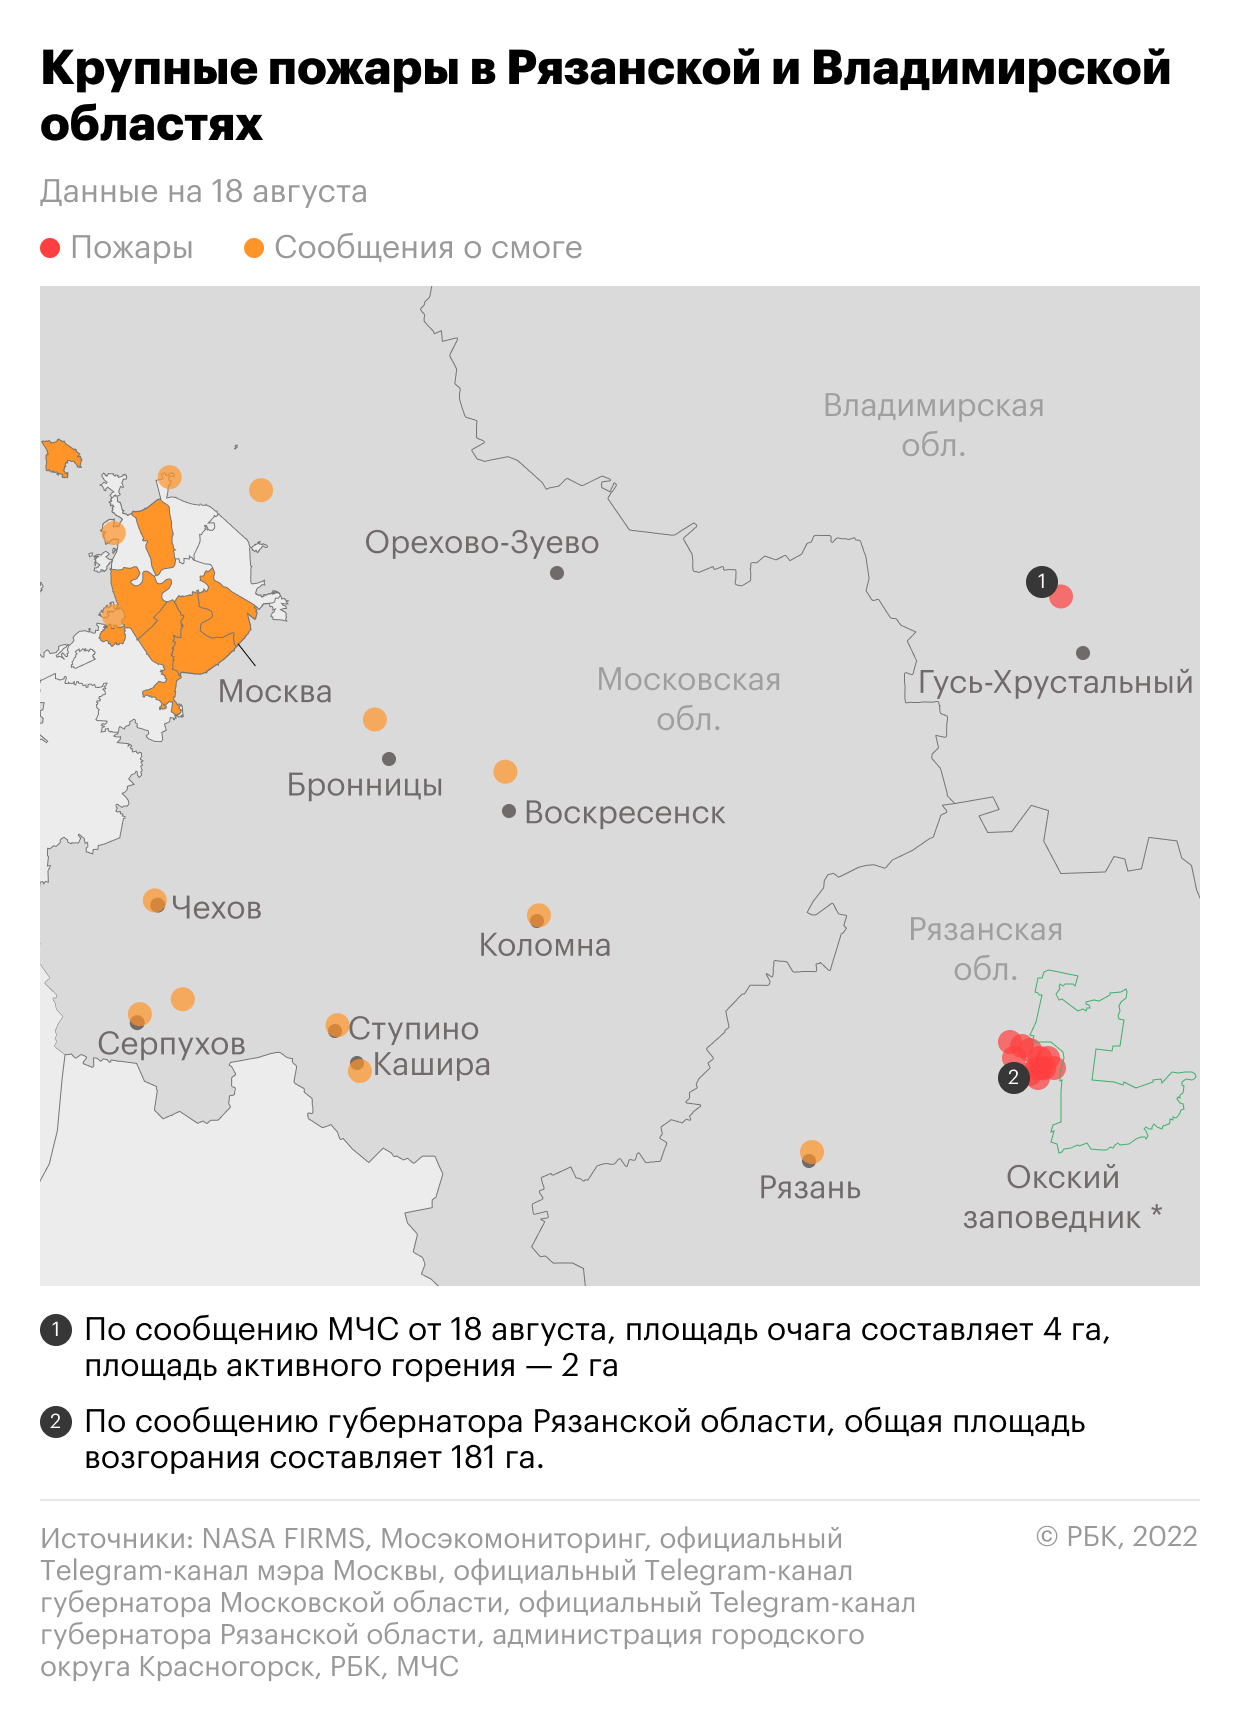 Последствия пожаров в Рязанской и Владимирской областях. Карта